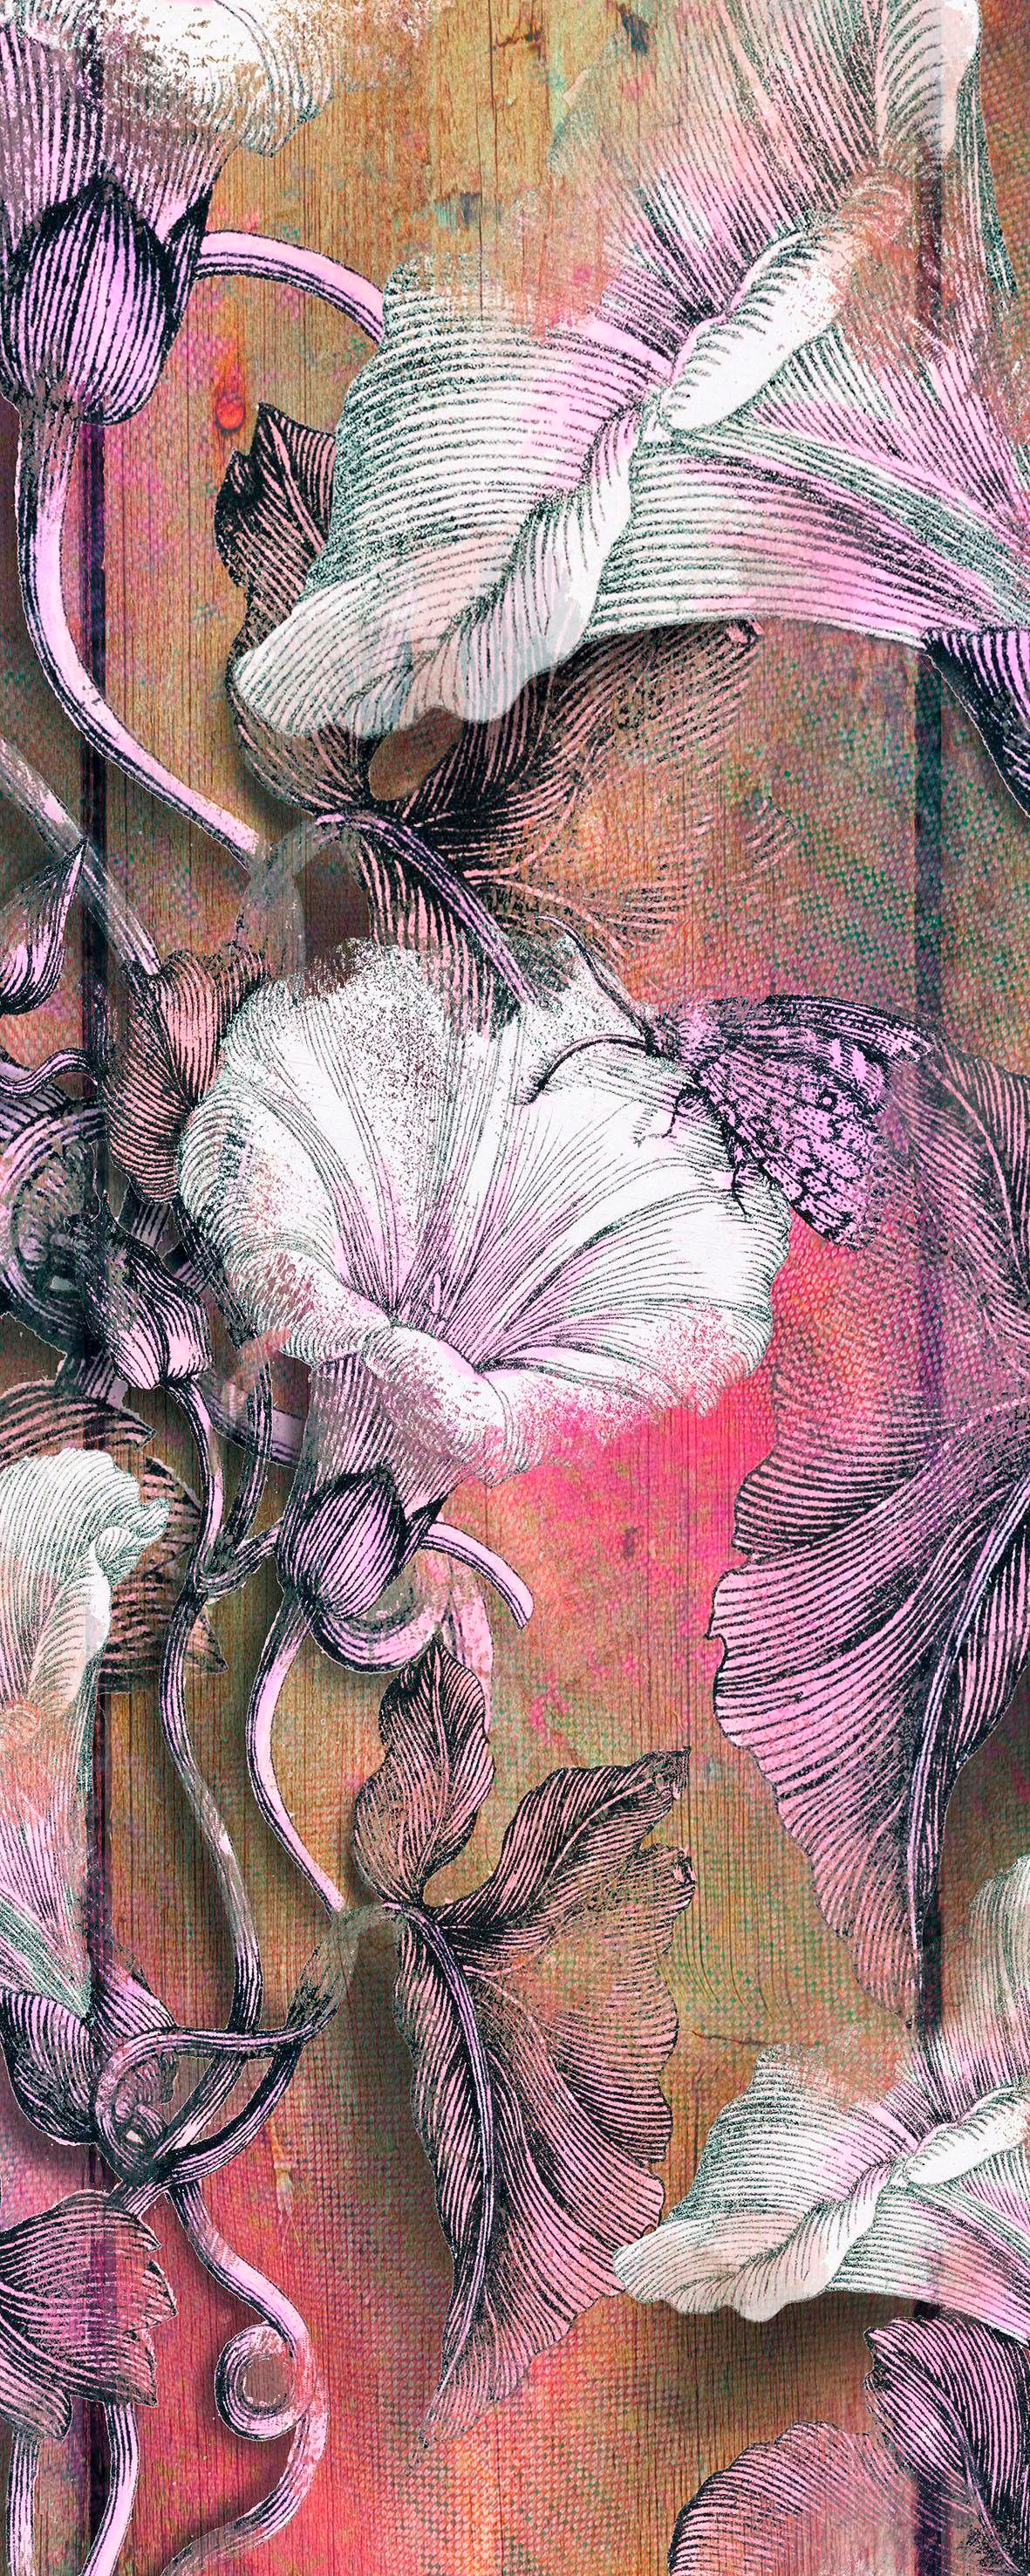 Komar Vliestapete »Bloomin Panel«, 100x250 cm (Breite x Höhe), Vliestapete, 100 cm Bahnbreite